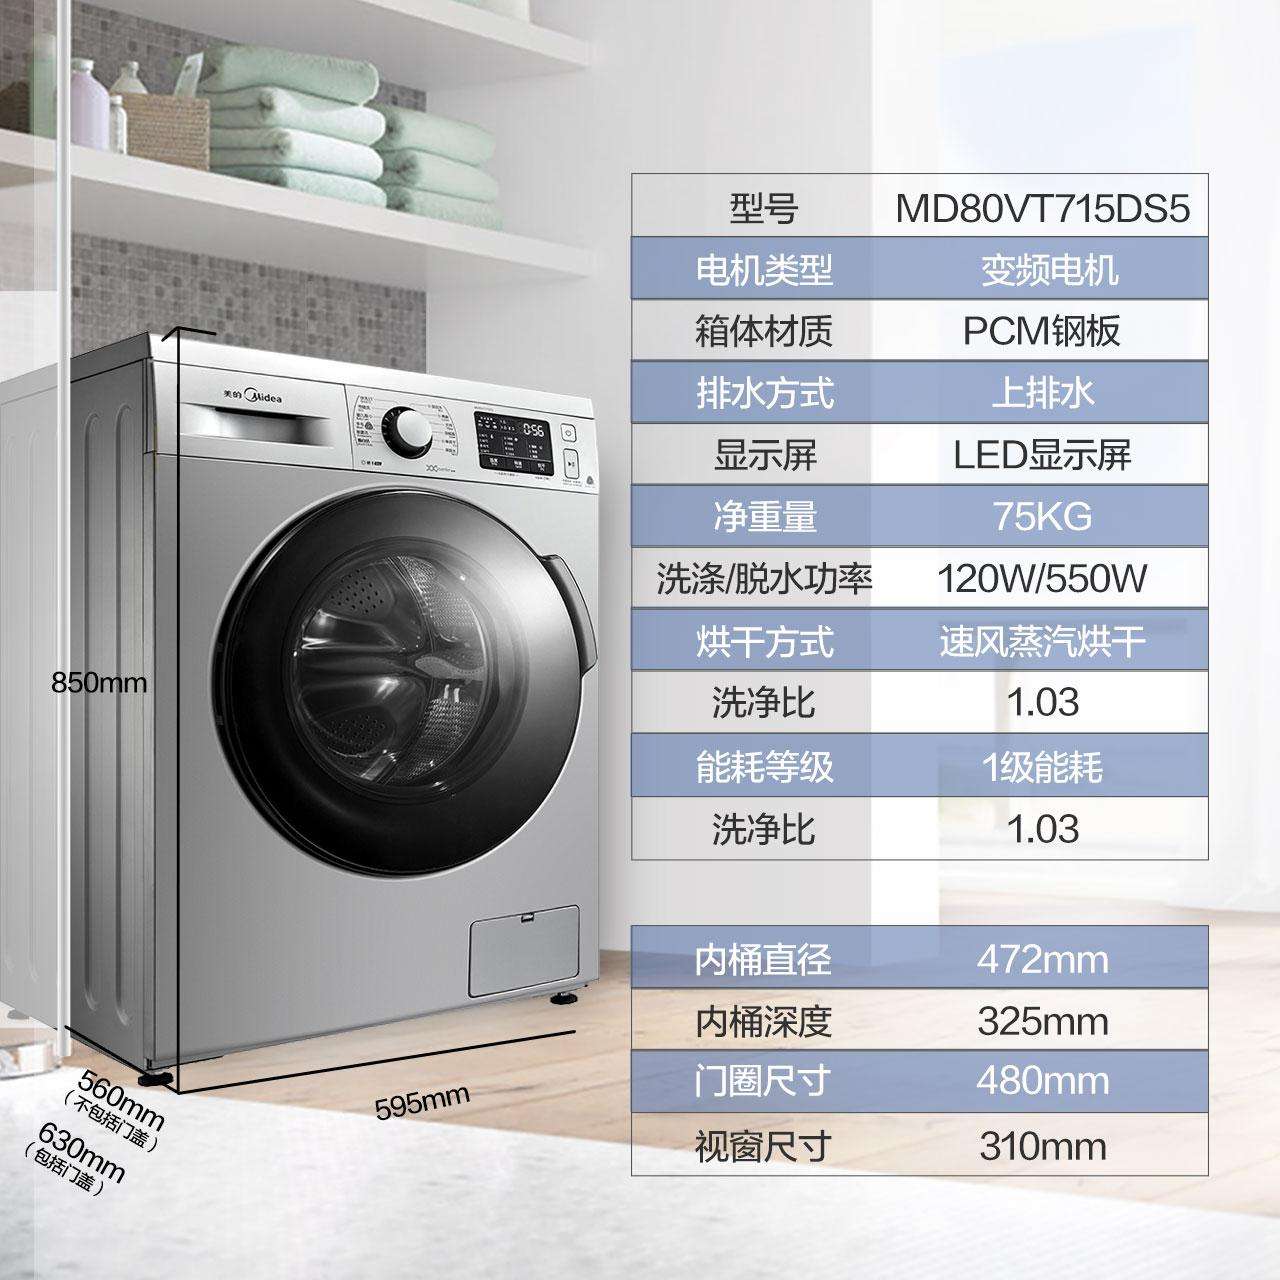 Bảng mã lỗi máy giặt Midea lồng đứng, lồng ngang và cách sửa hiệu quả - NTDTT.com